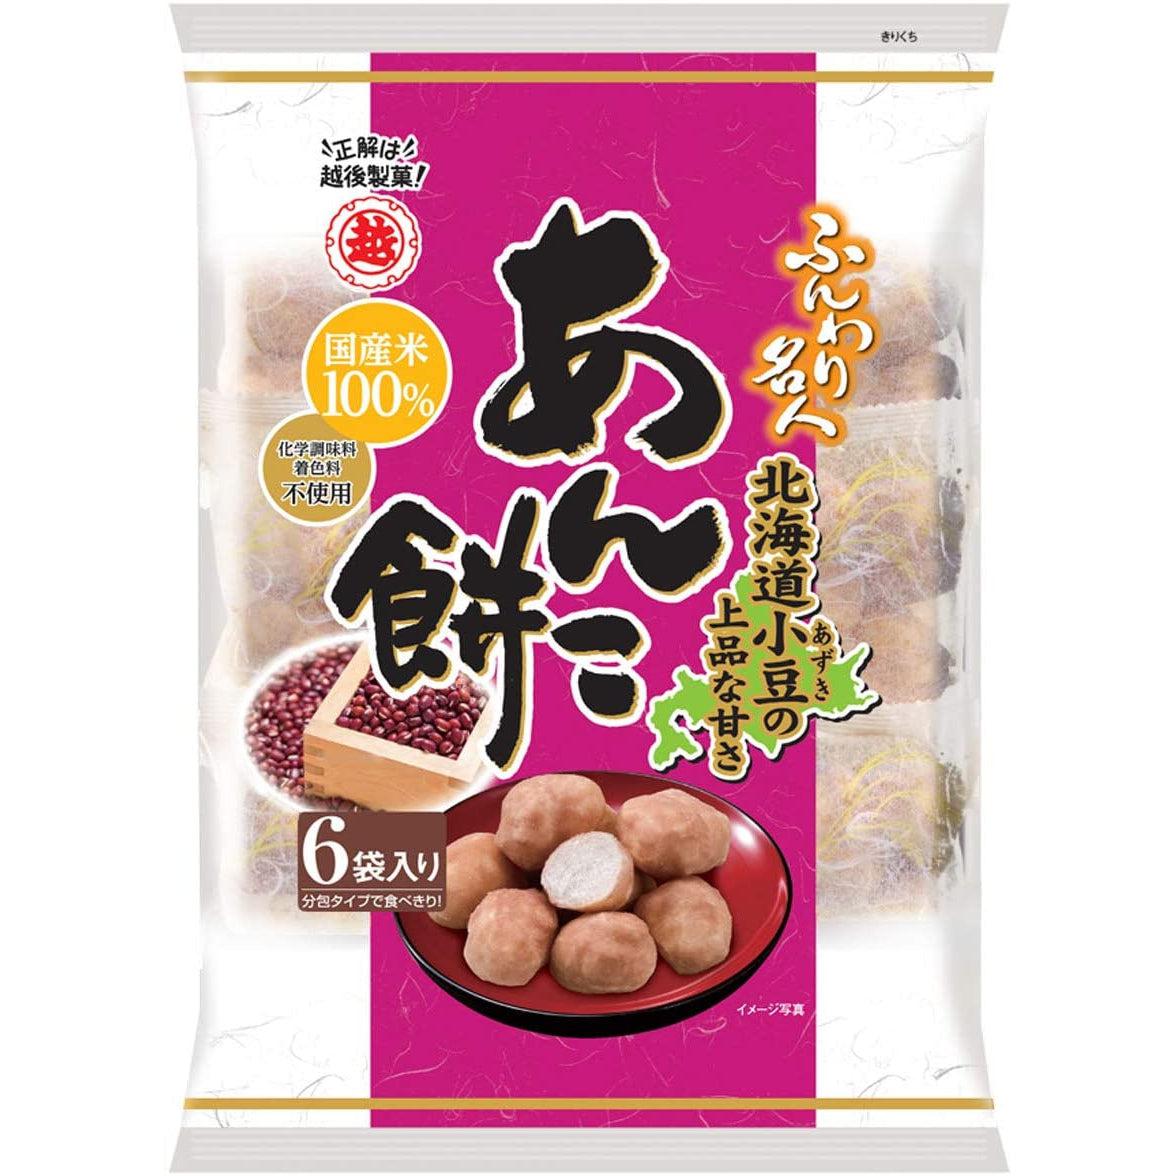 Funwari Meijin Mochi Puffs Snack Anko Paste Flavor 60g (Pack of 6)